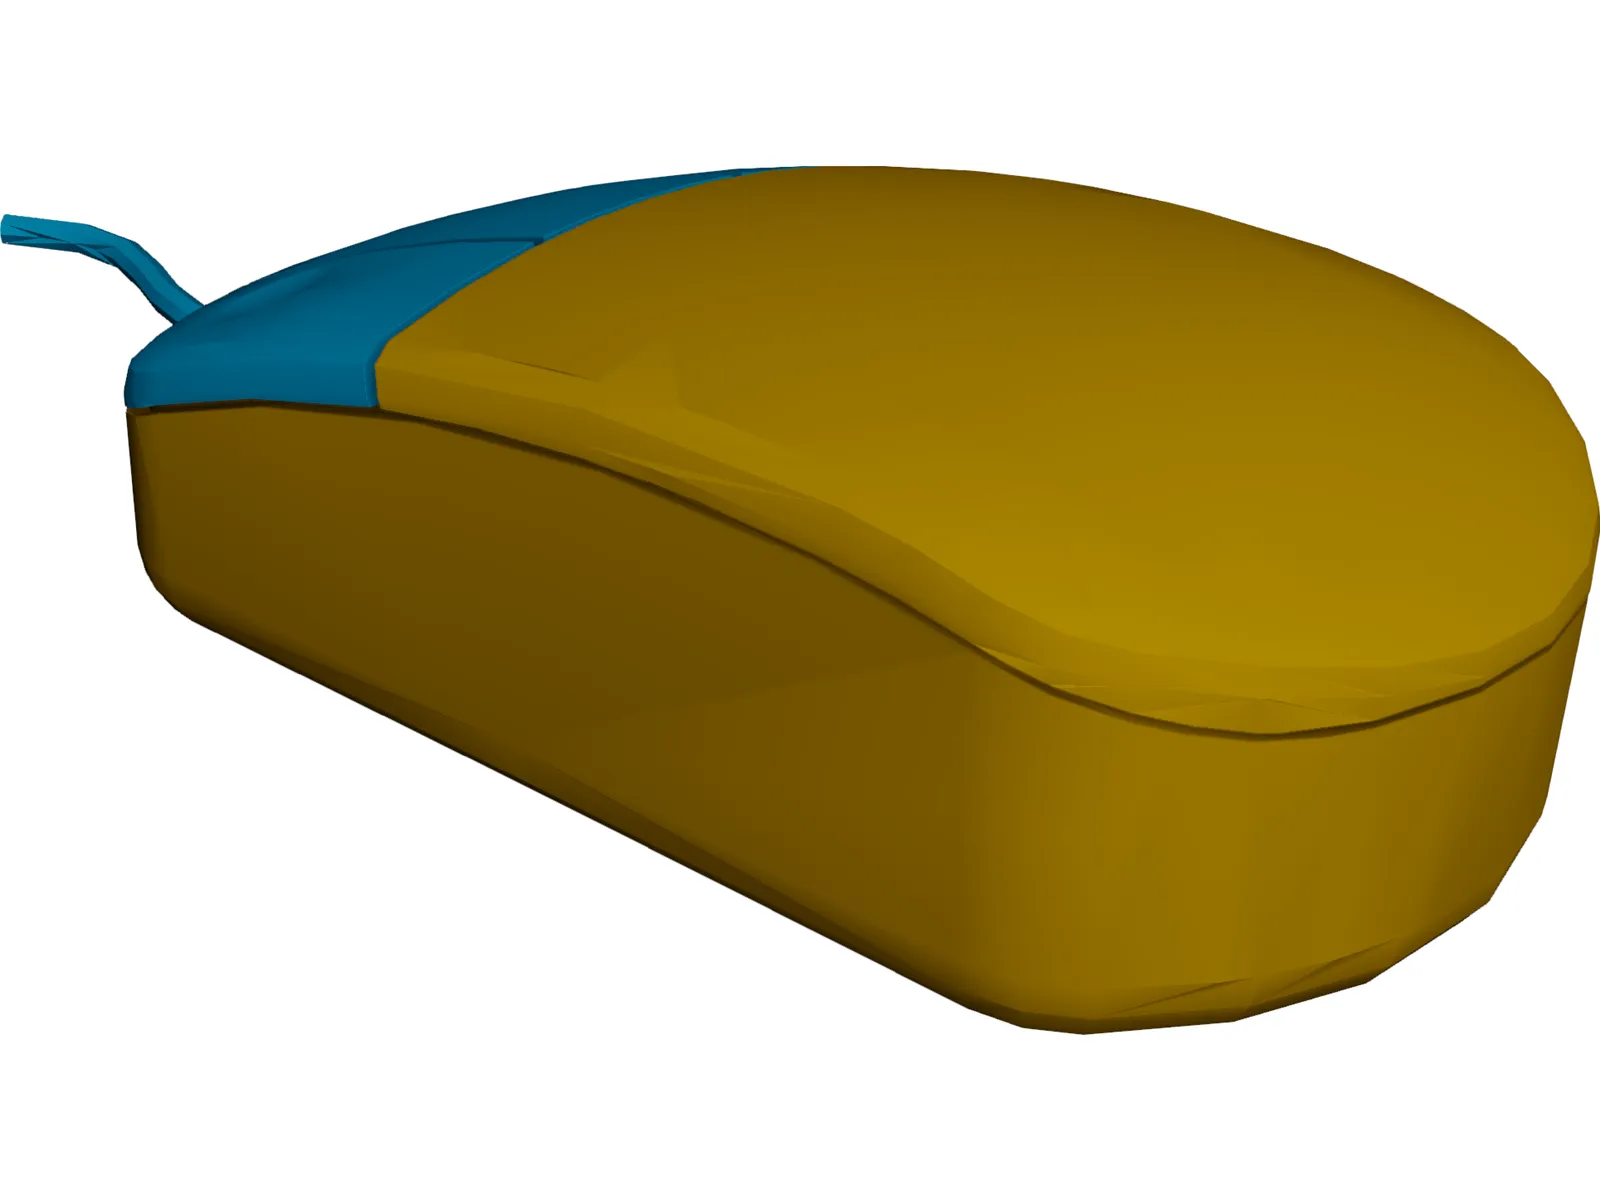 Computer Mouse 3D Model